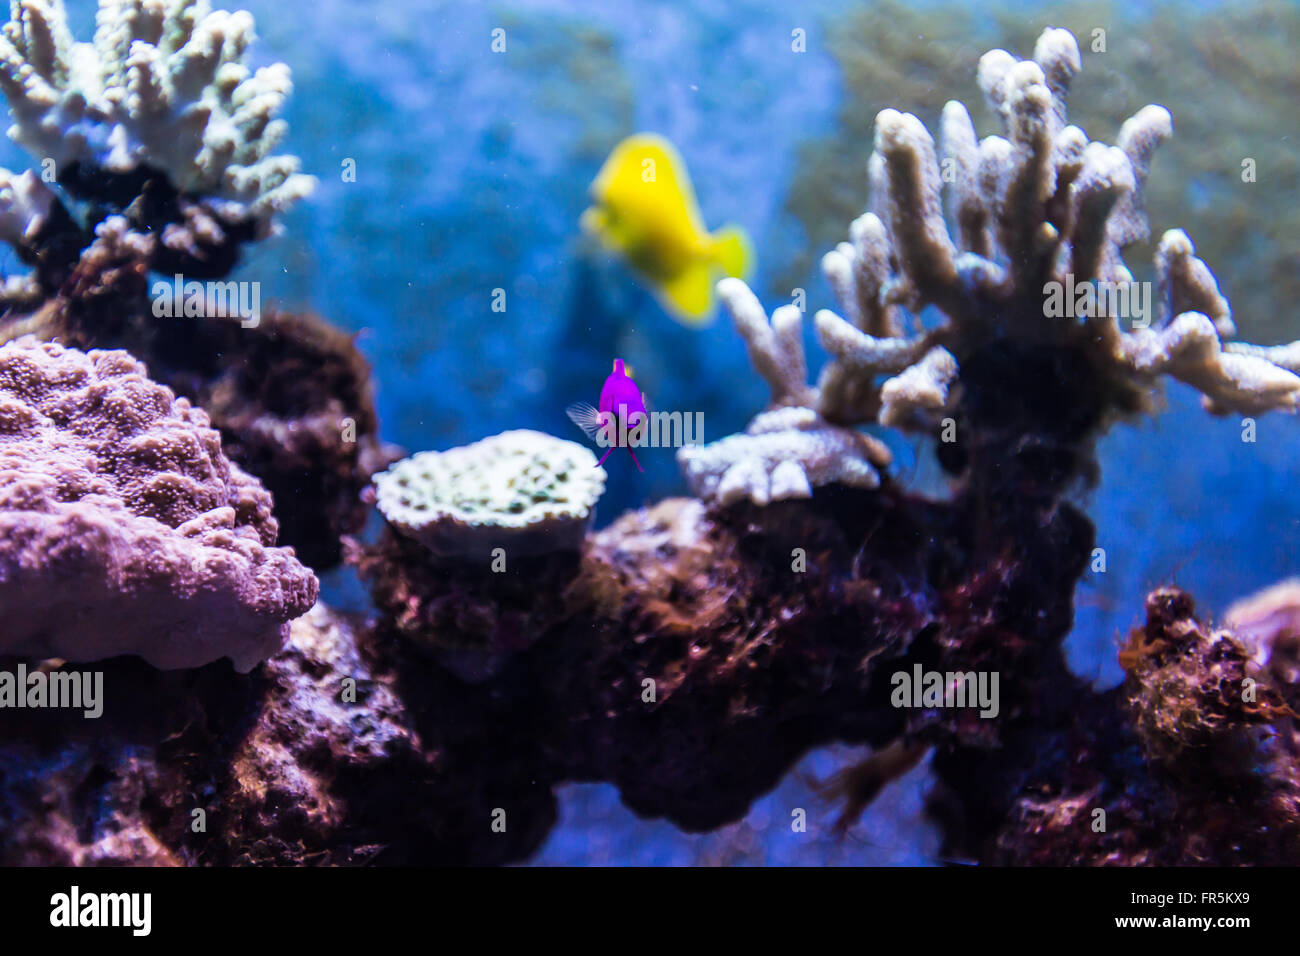 Tropical Fish in Aquarium Stock Photo